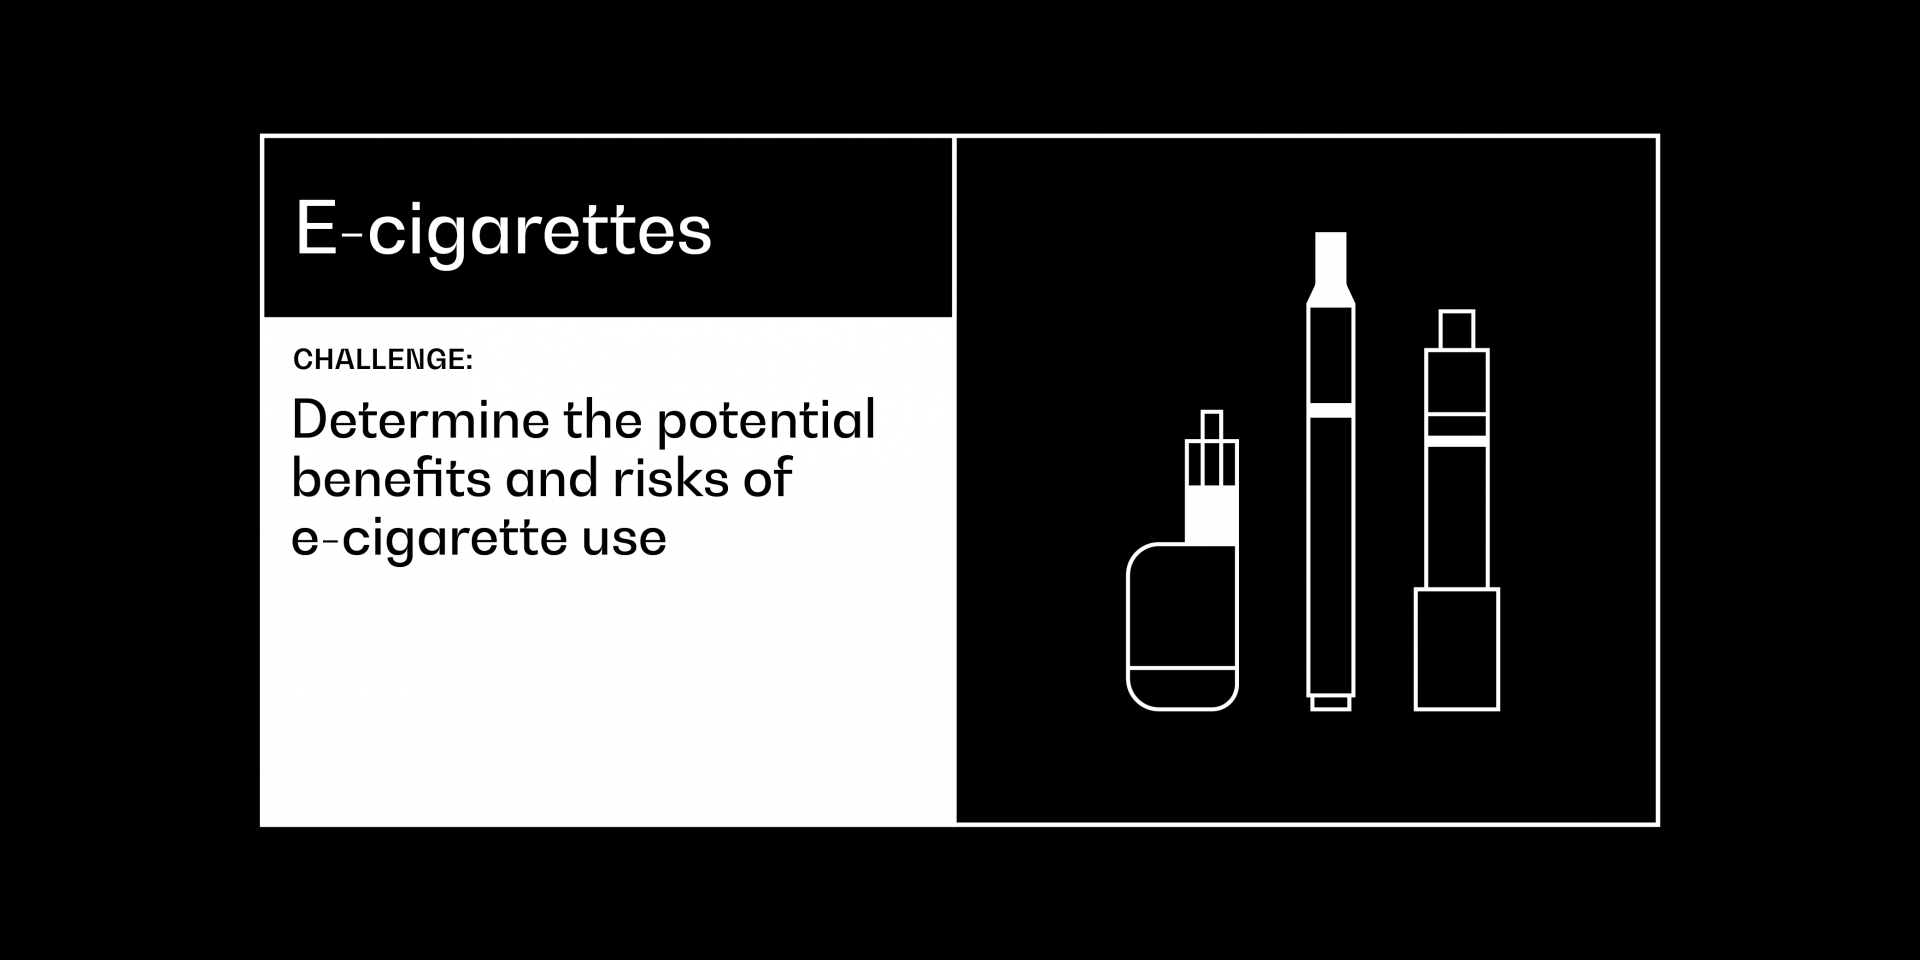 E-cigarettes cancer grand challenge